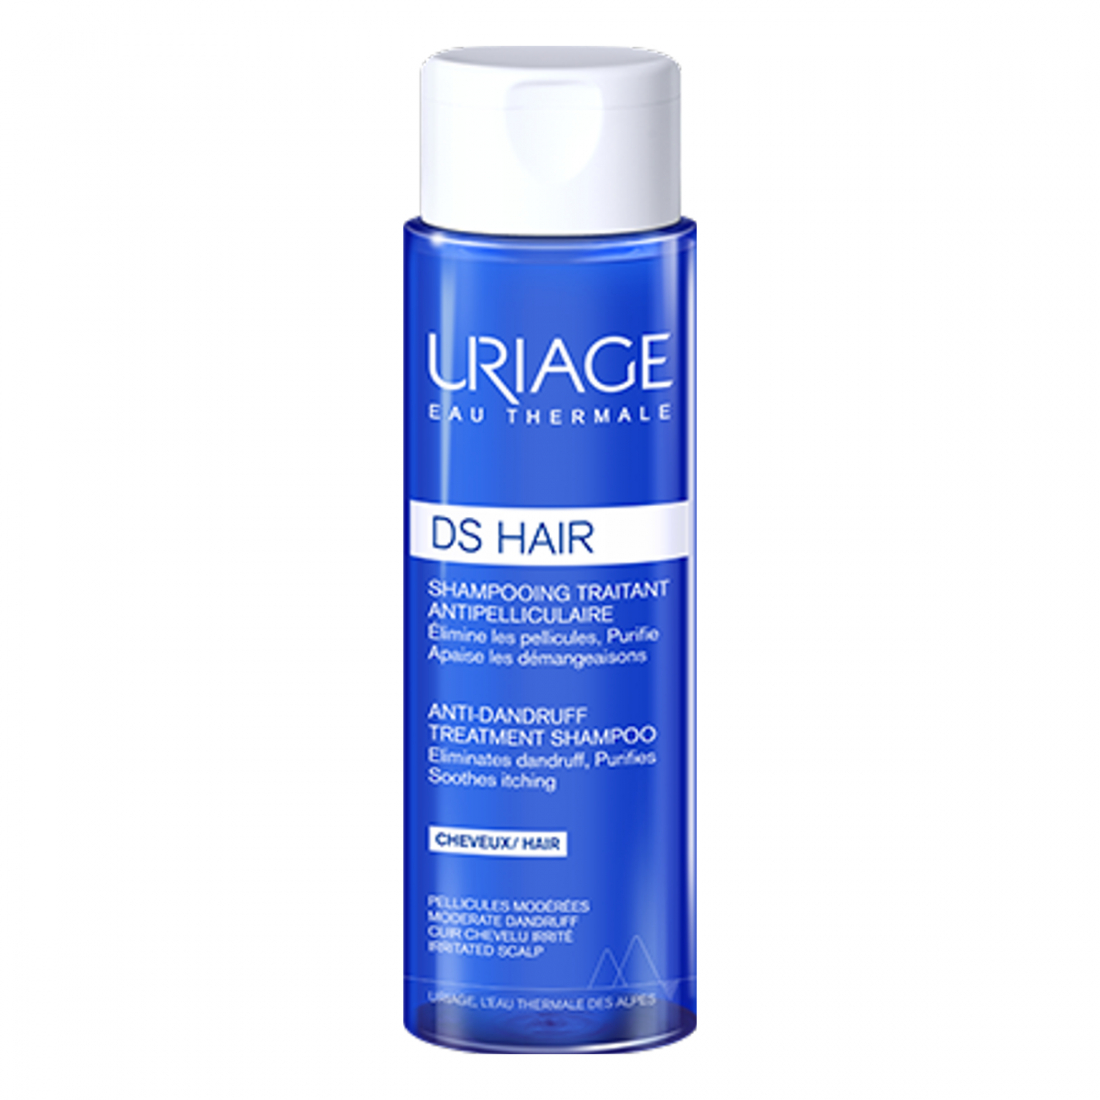 'Ds Hair Anti Dandruff' Treatment Shampoo - 200 ml